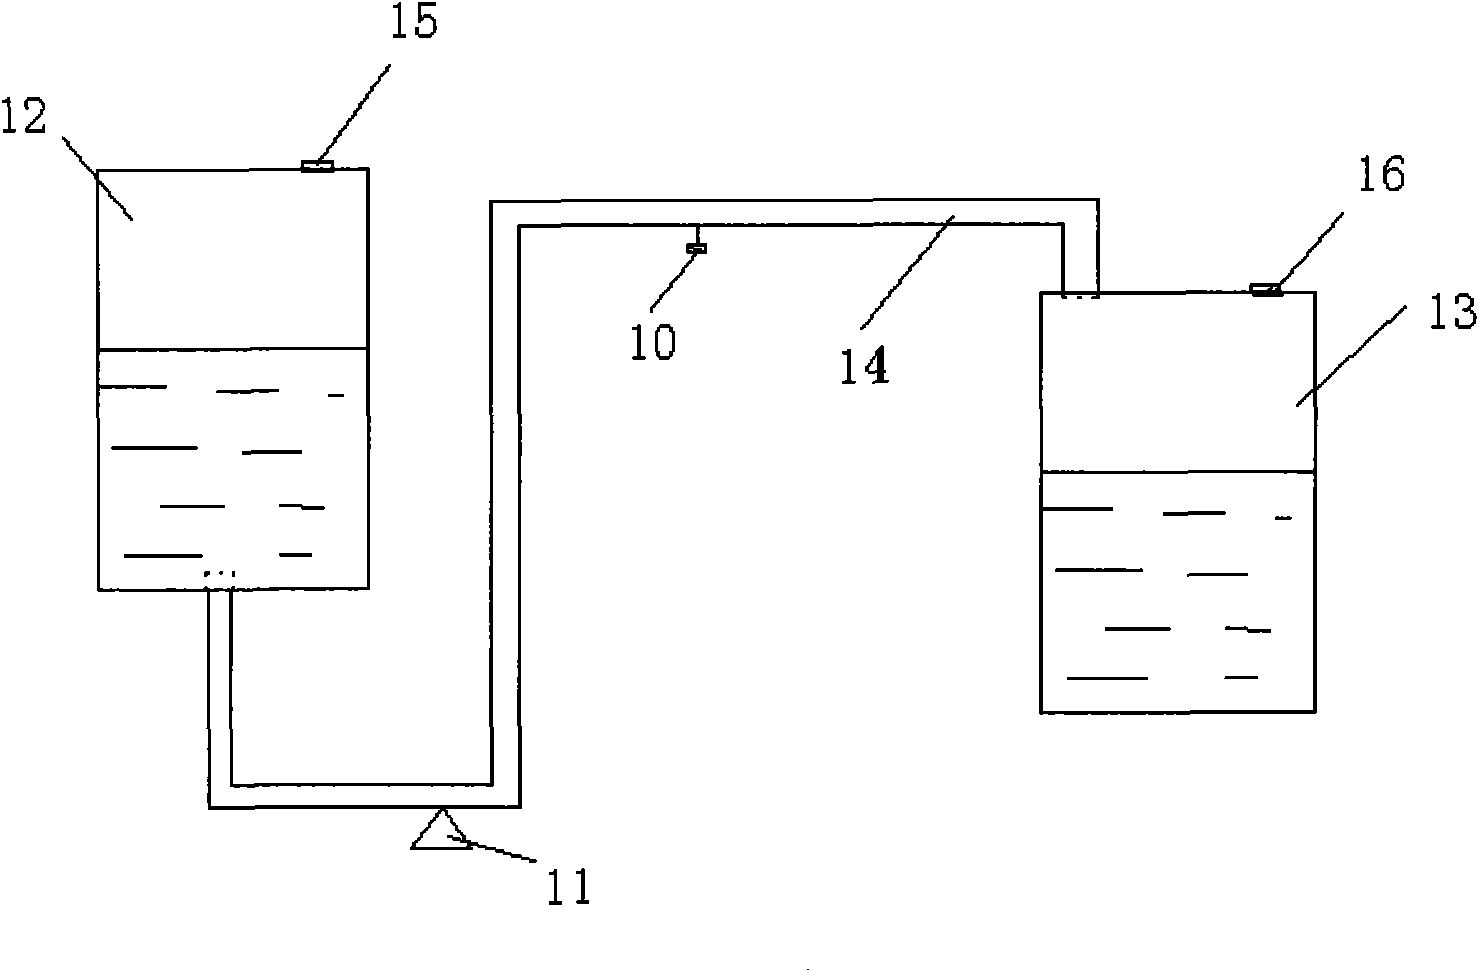 Liquid conveyer used between storage tanks